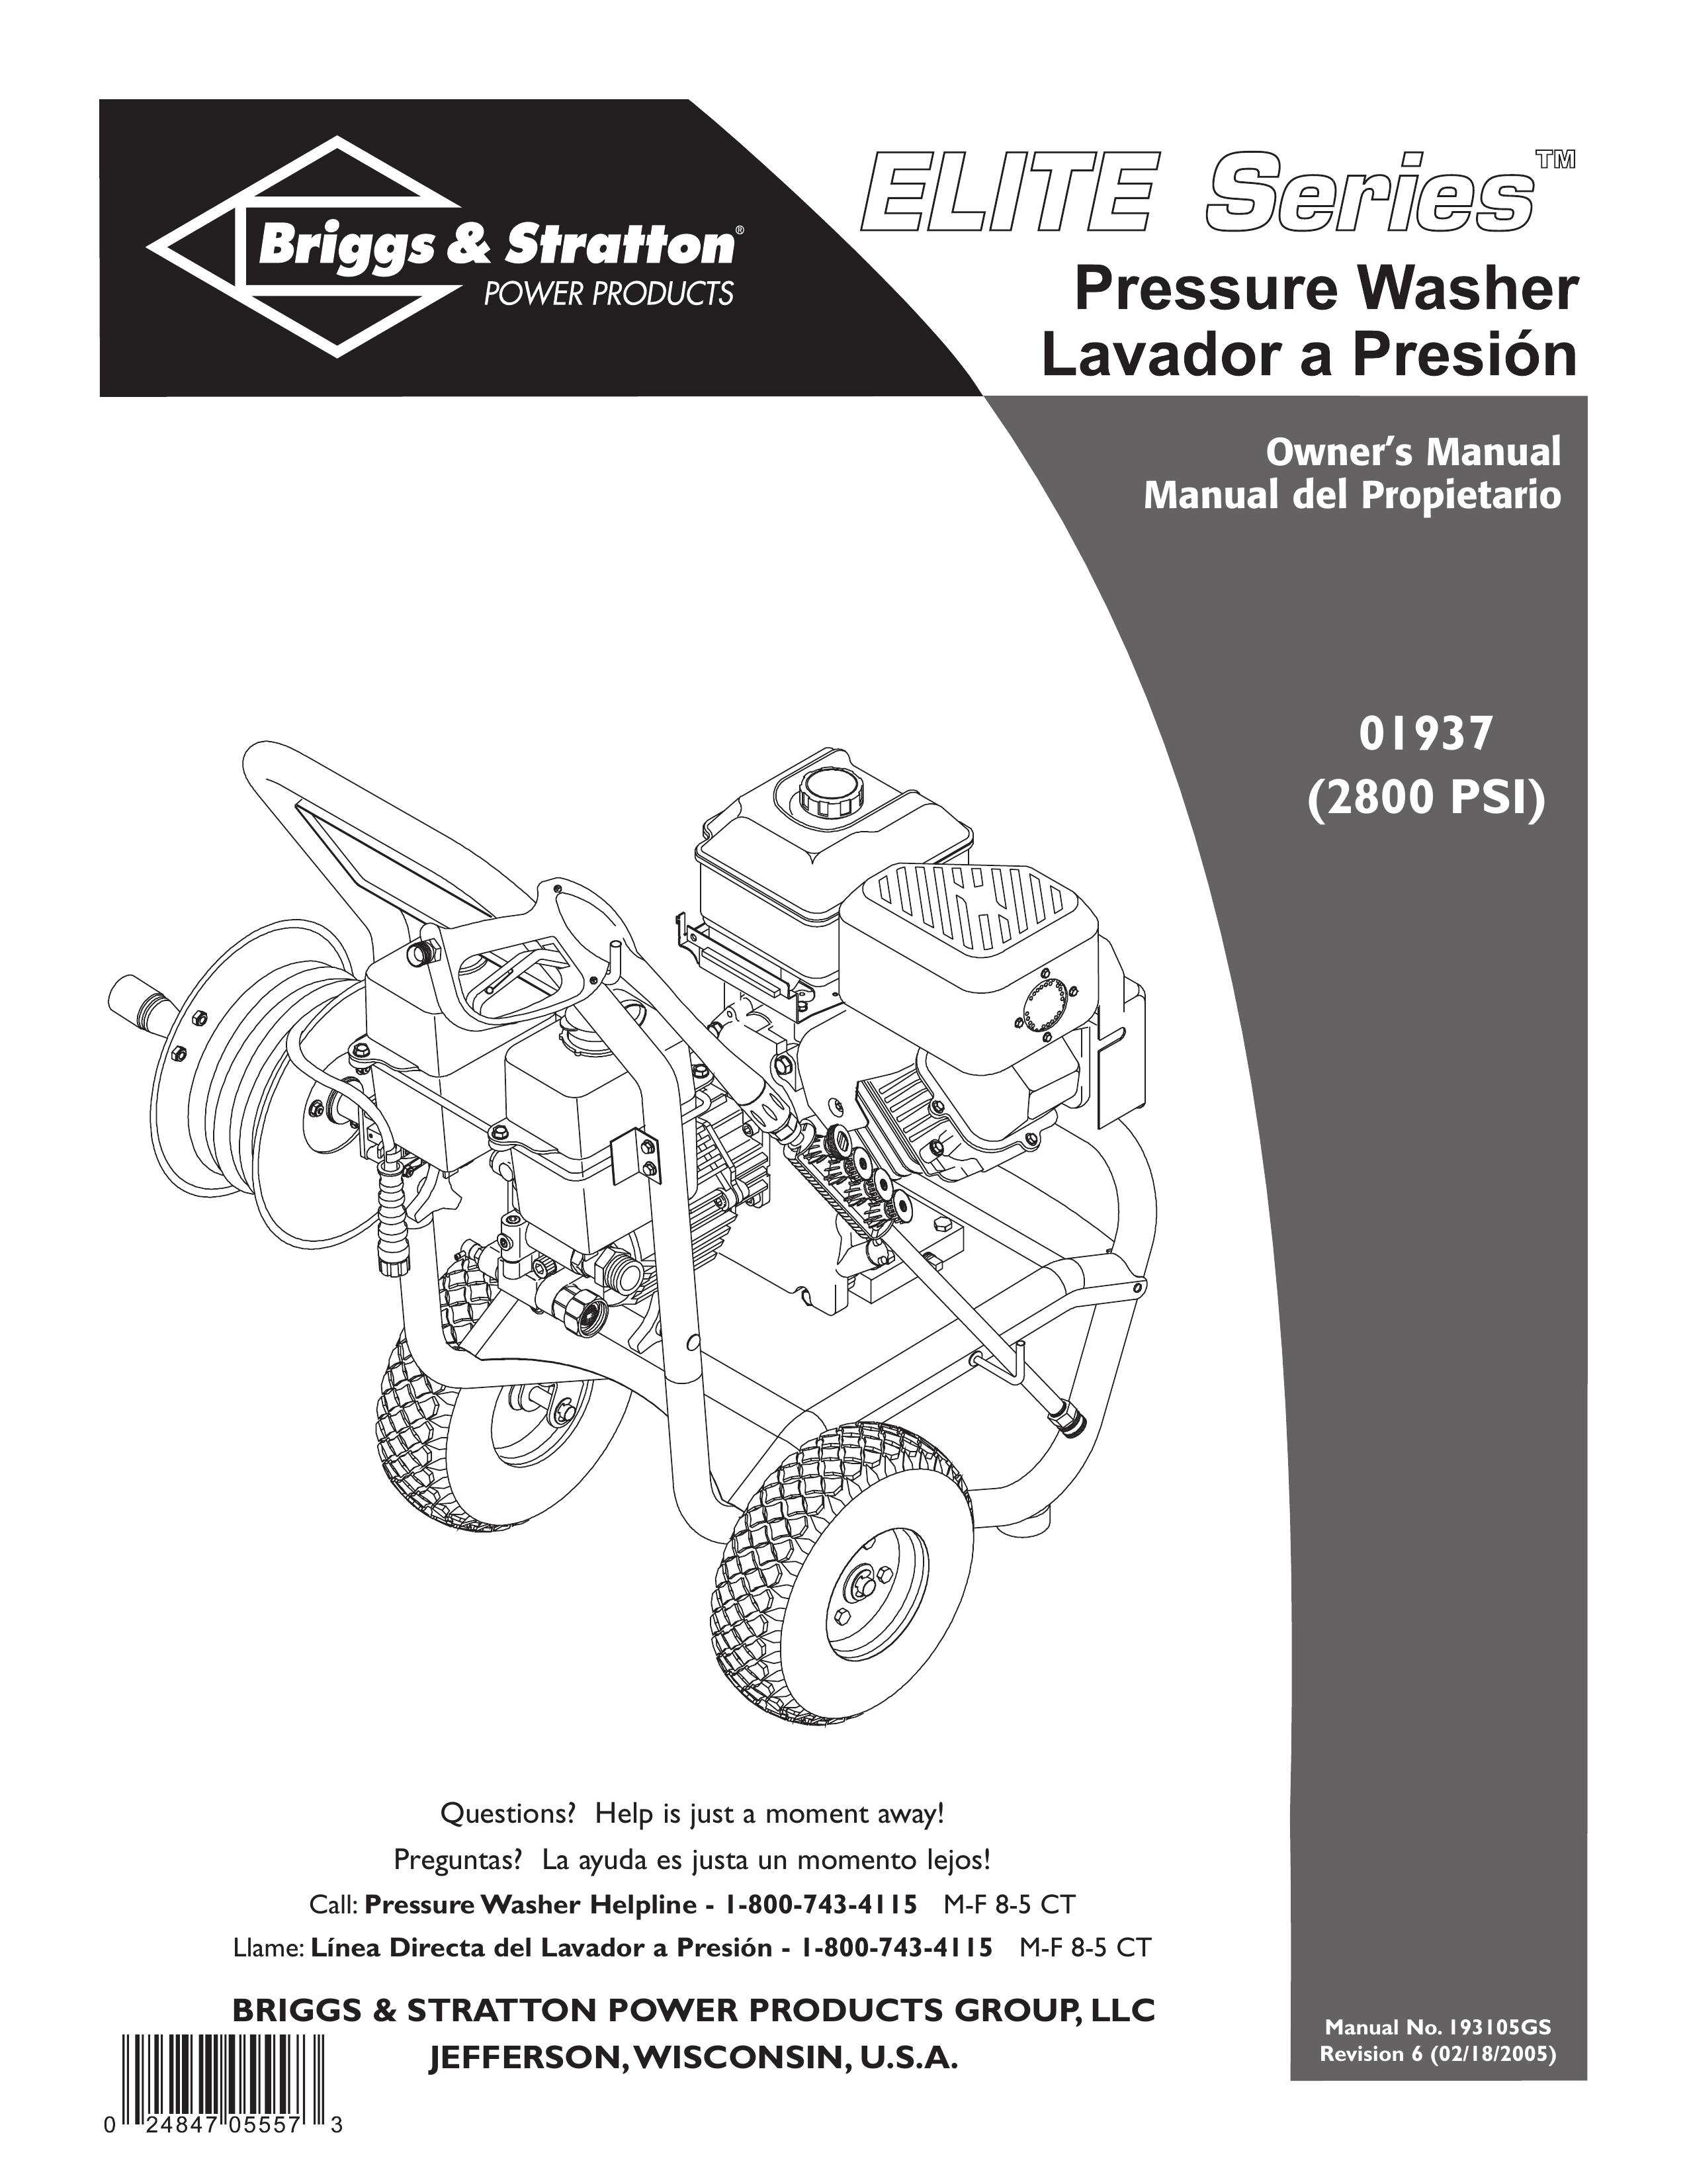 Briggs & Stratton 01937 Pressure Washer User Manual